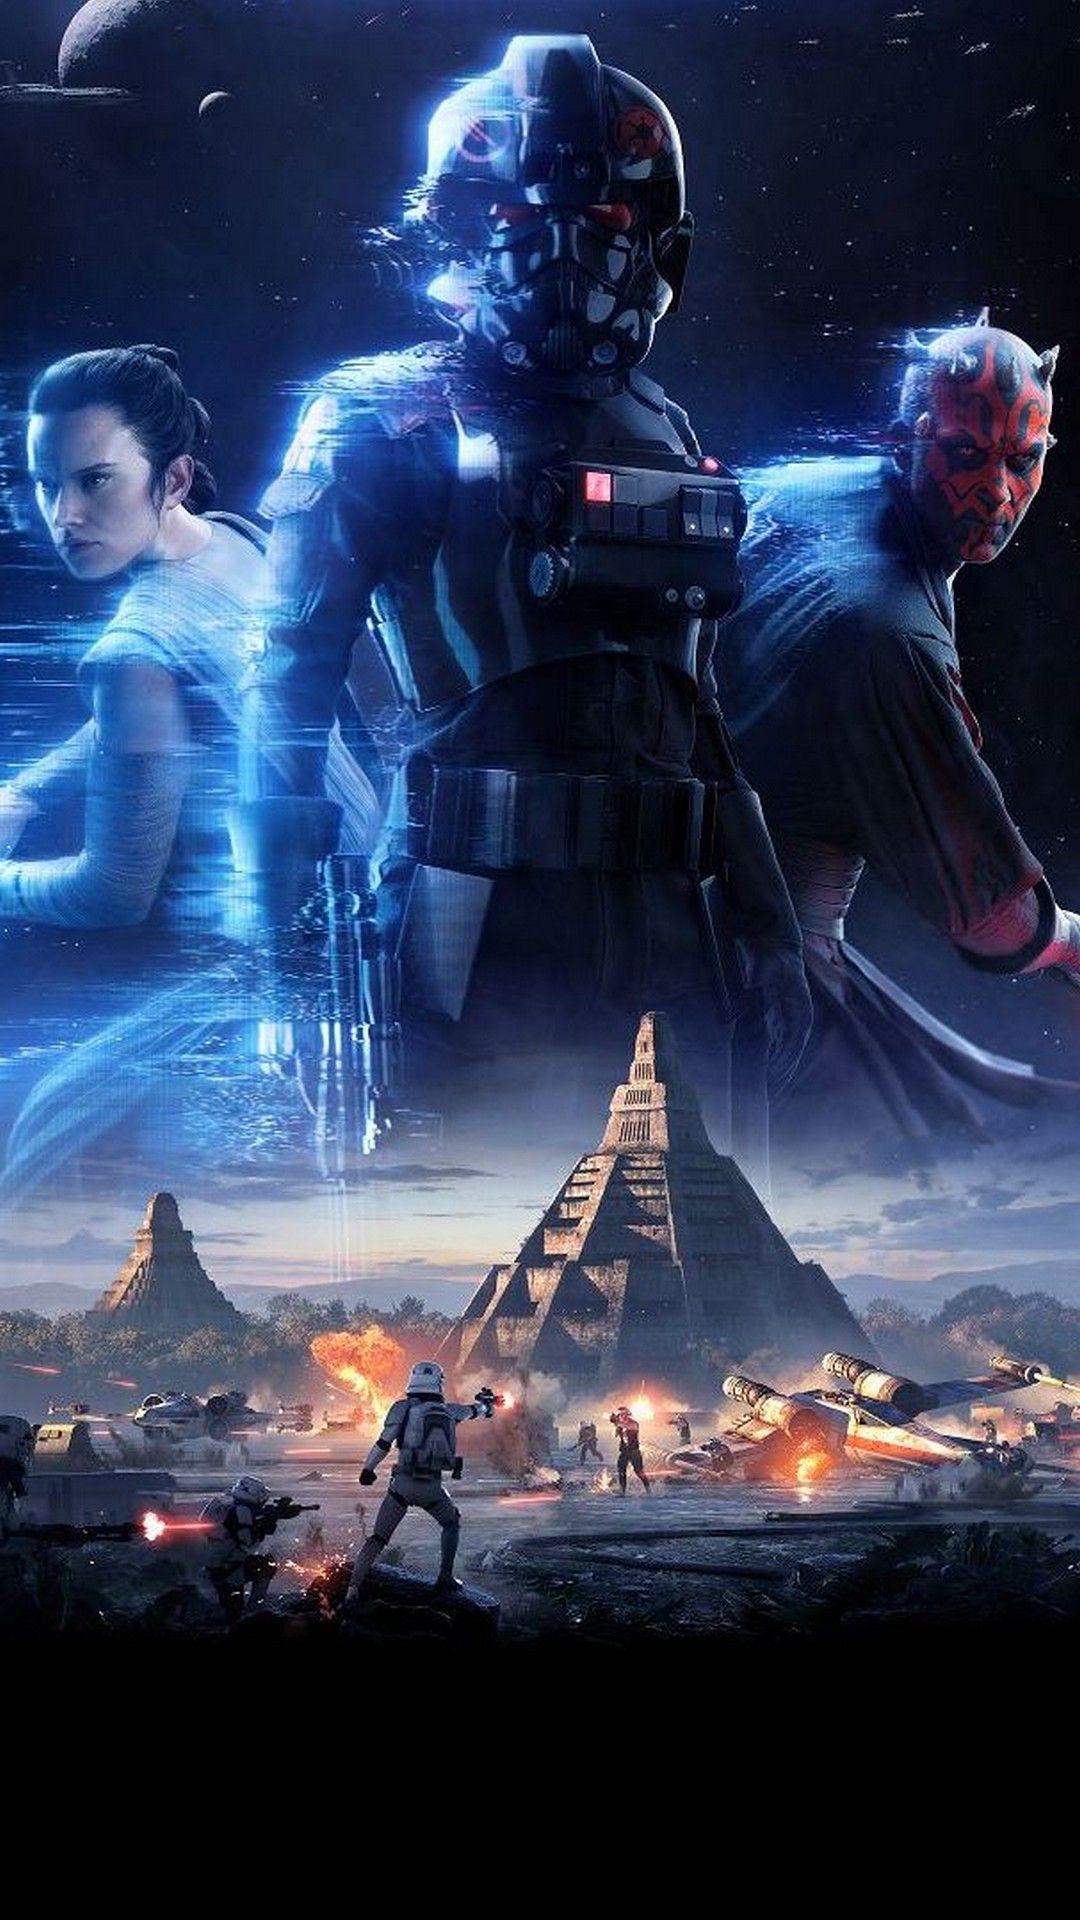 Star Wars iPhone Background Cinematics Wallpaper Ideas. Star